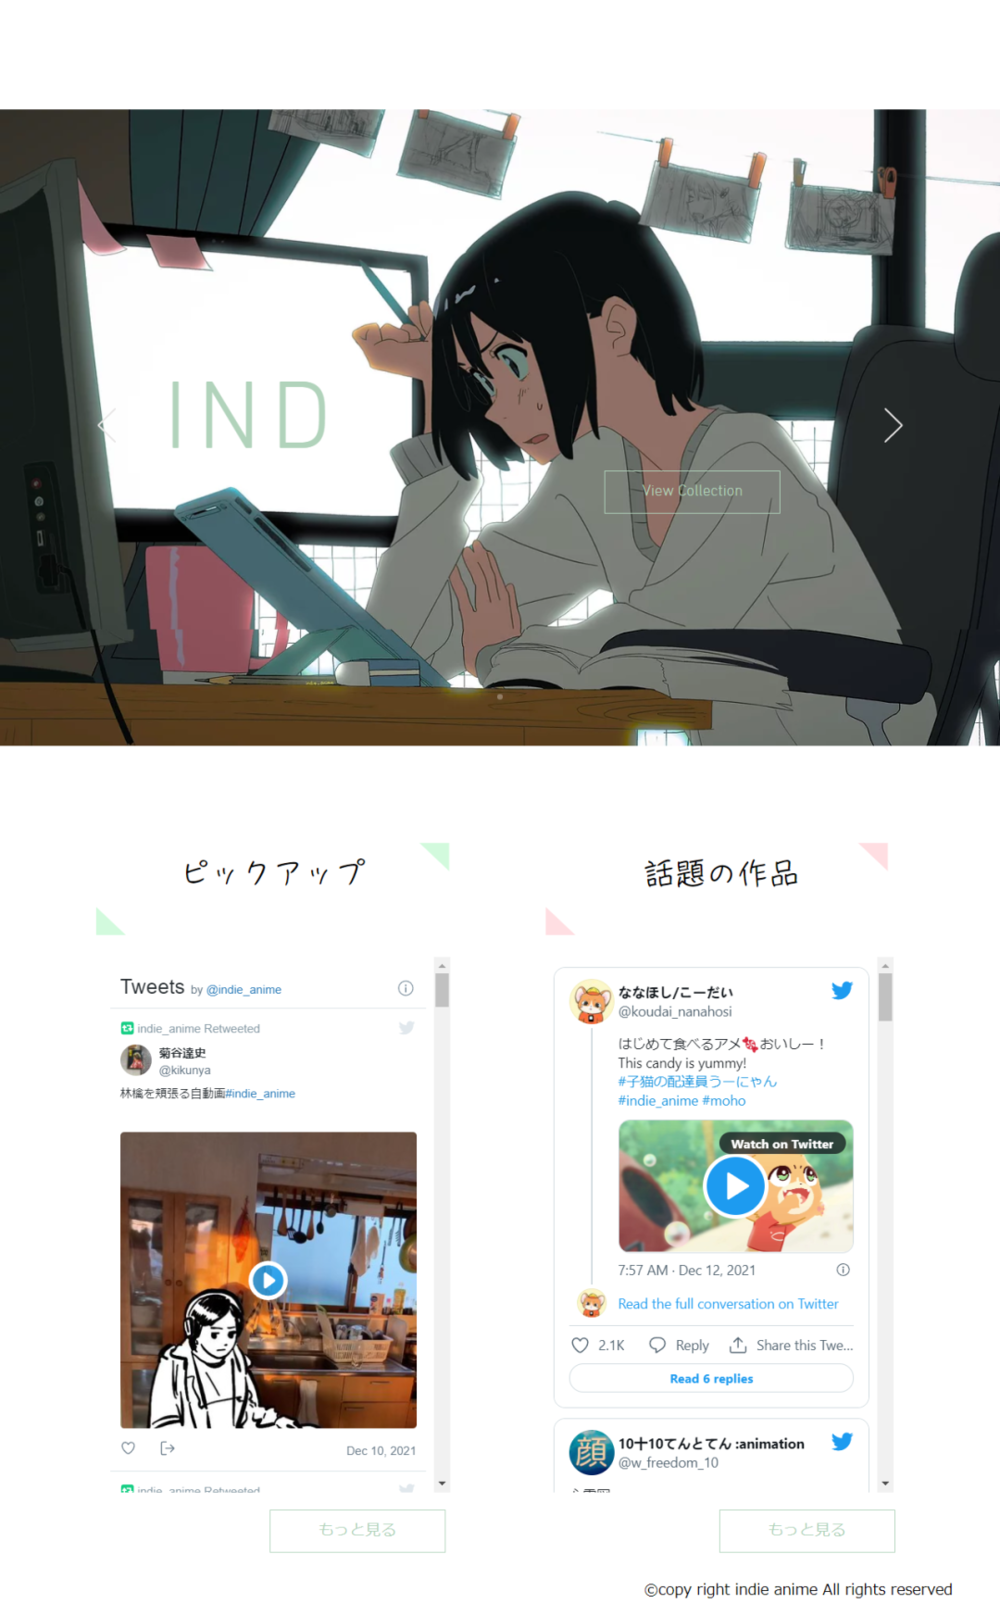 こむぎこ2000开设的“indie anime”网站，可以即时看到推特上更新的个人动画<br>